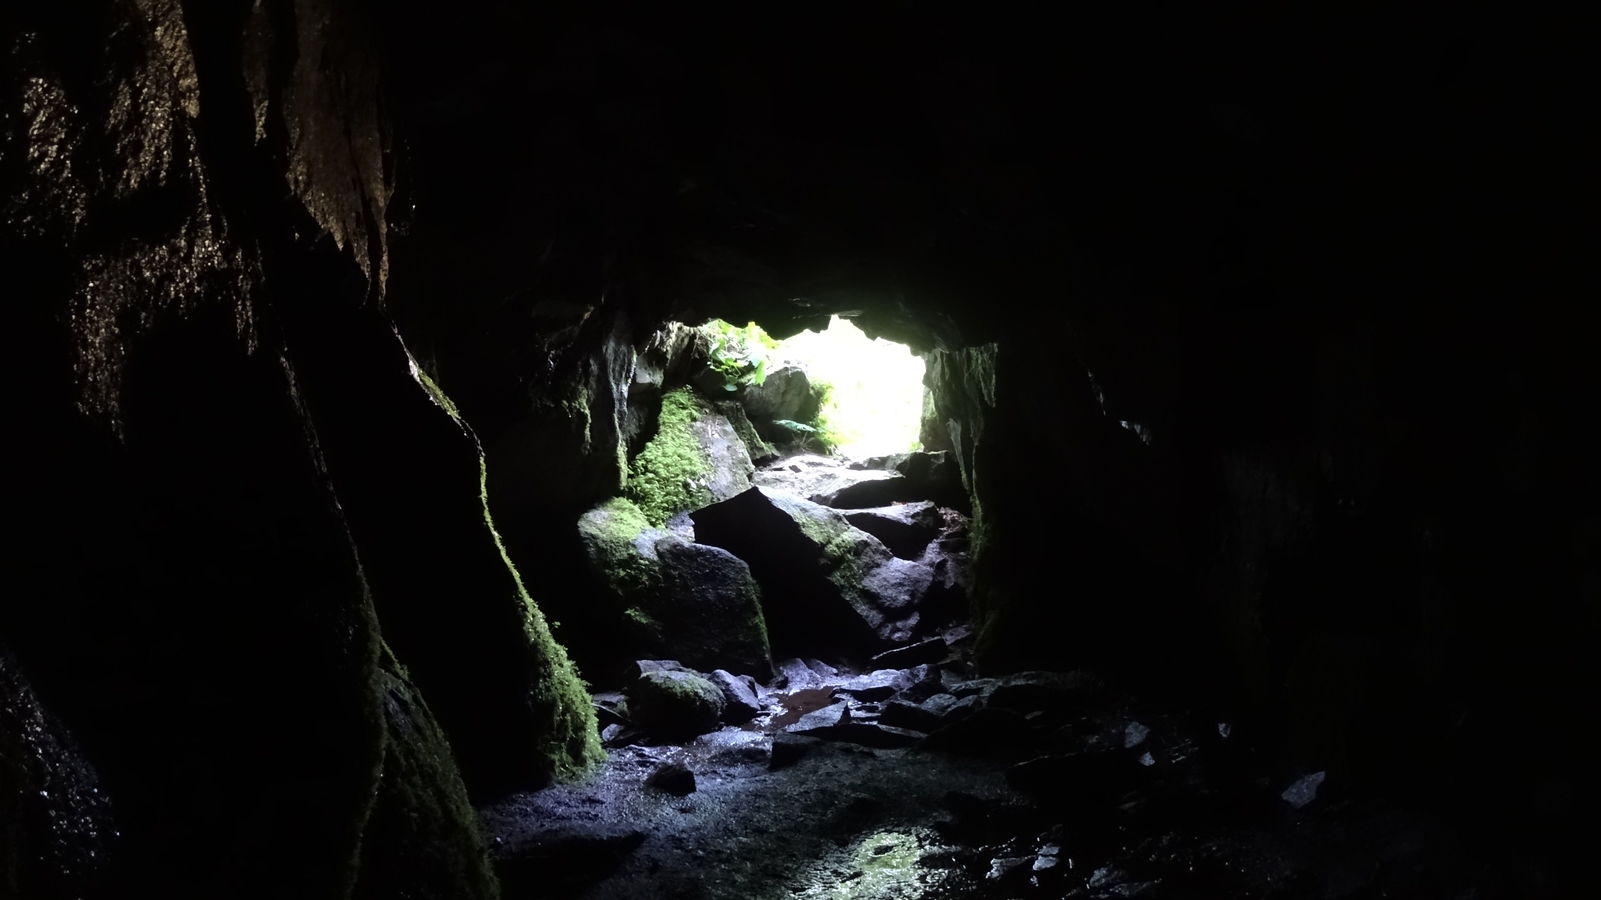 Grotte de Dagobert. Surtout très agréable sonoriquement, on entend l'eau couler et résonner dans la roche.